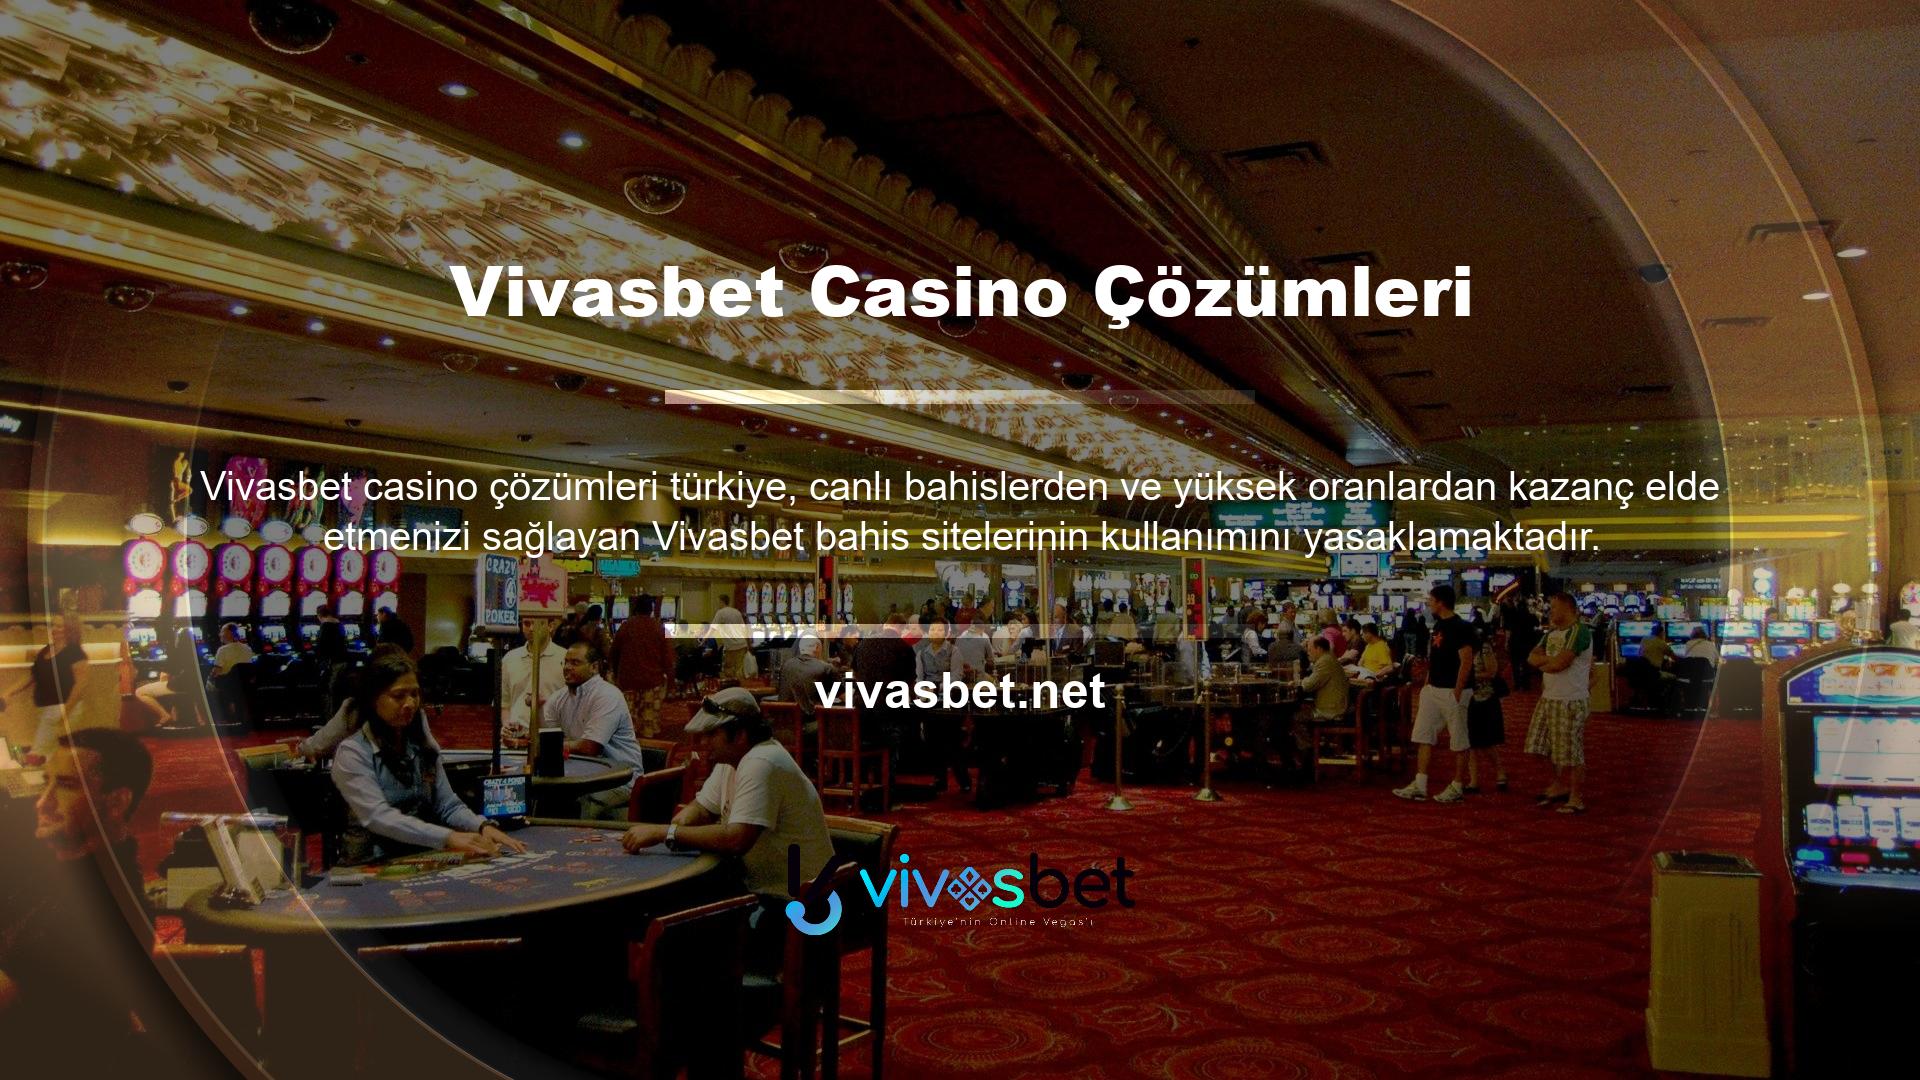 Vivasbet hem uluslararası hem de Türkiye'de büyük popülerlik kazanmış bir bahis sitesidir